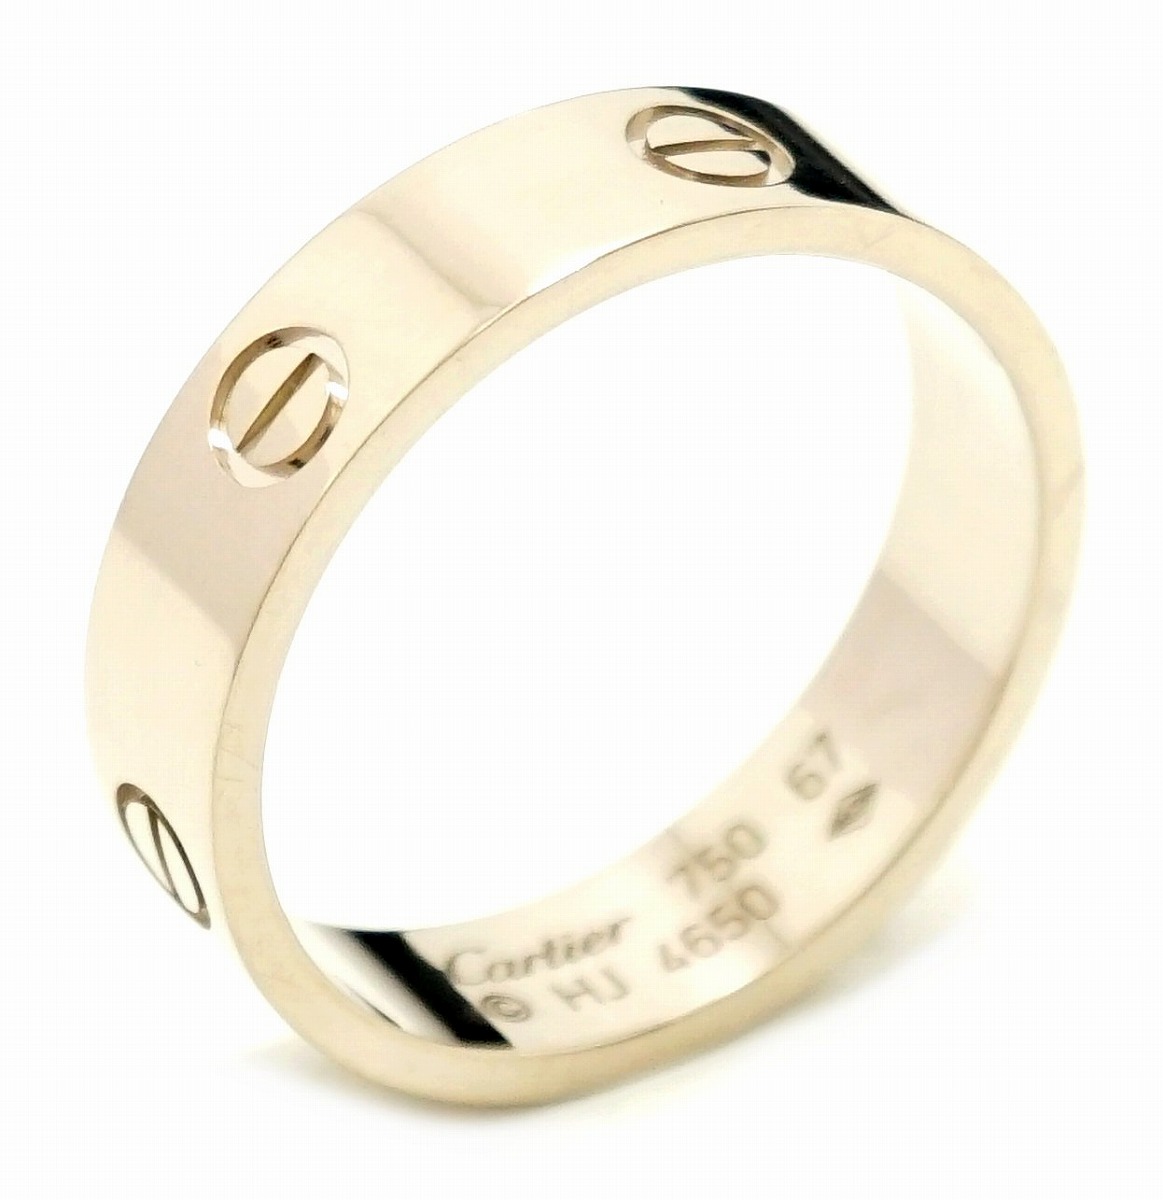 【ジュエリー】Cartier カルティエ ラブリング K18WG 750WG ホワイトゴールド リング 指輪 #67 27号 B4084700  B4084767 【中古】【u】 | Blumin 楽天市場店